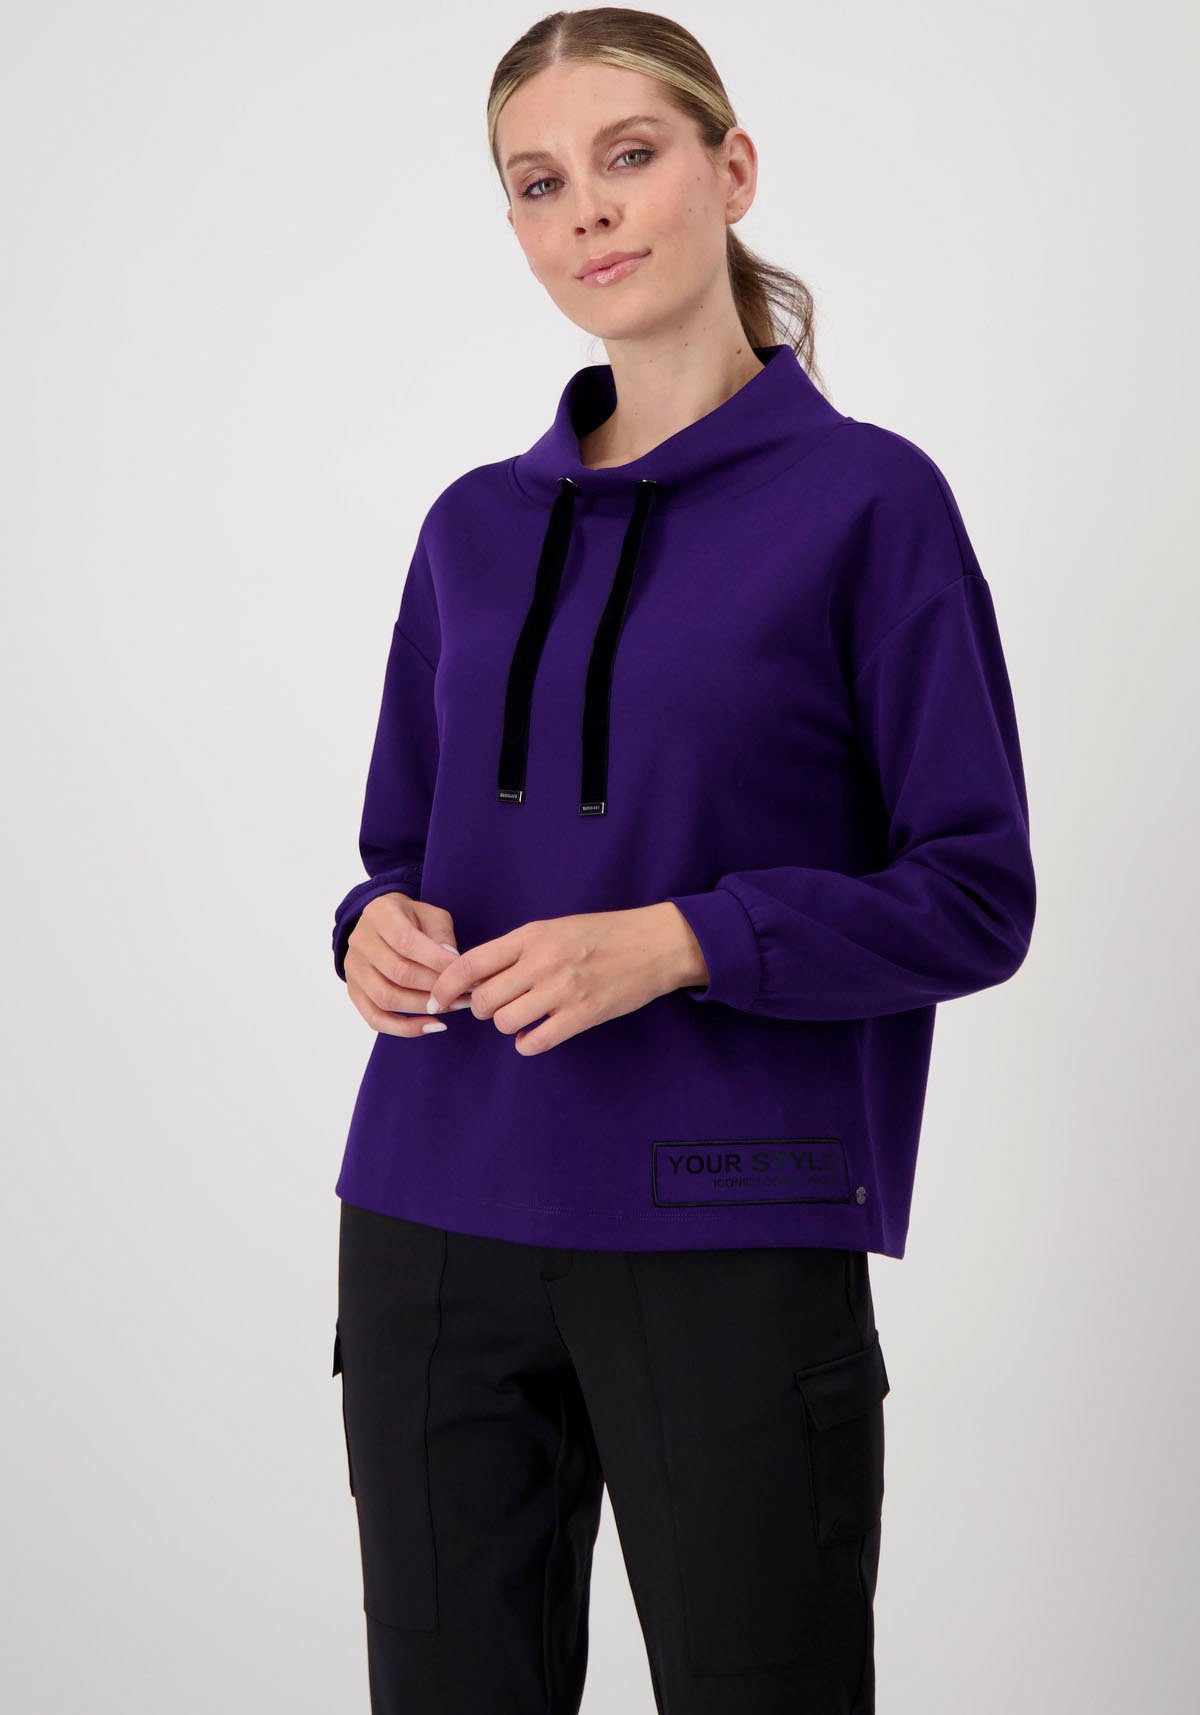 Monari Sweatshirt in angesagter Trendfarbe ink